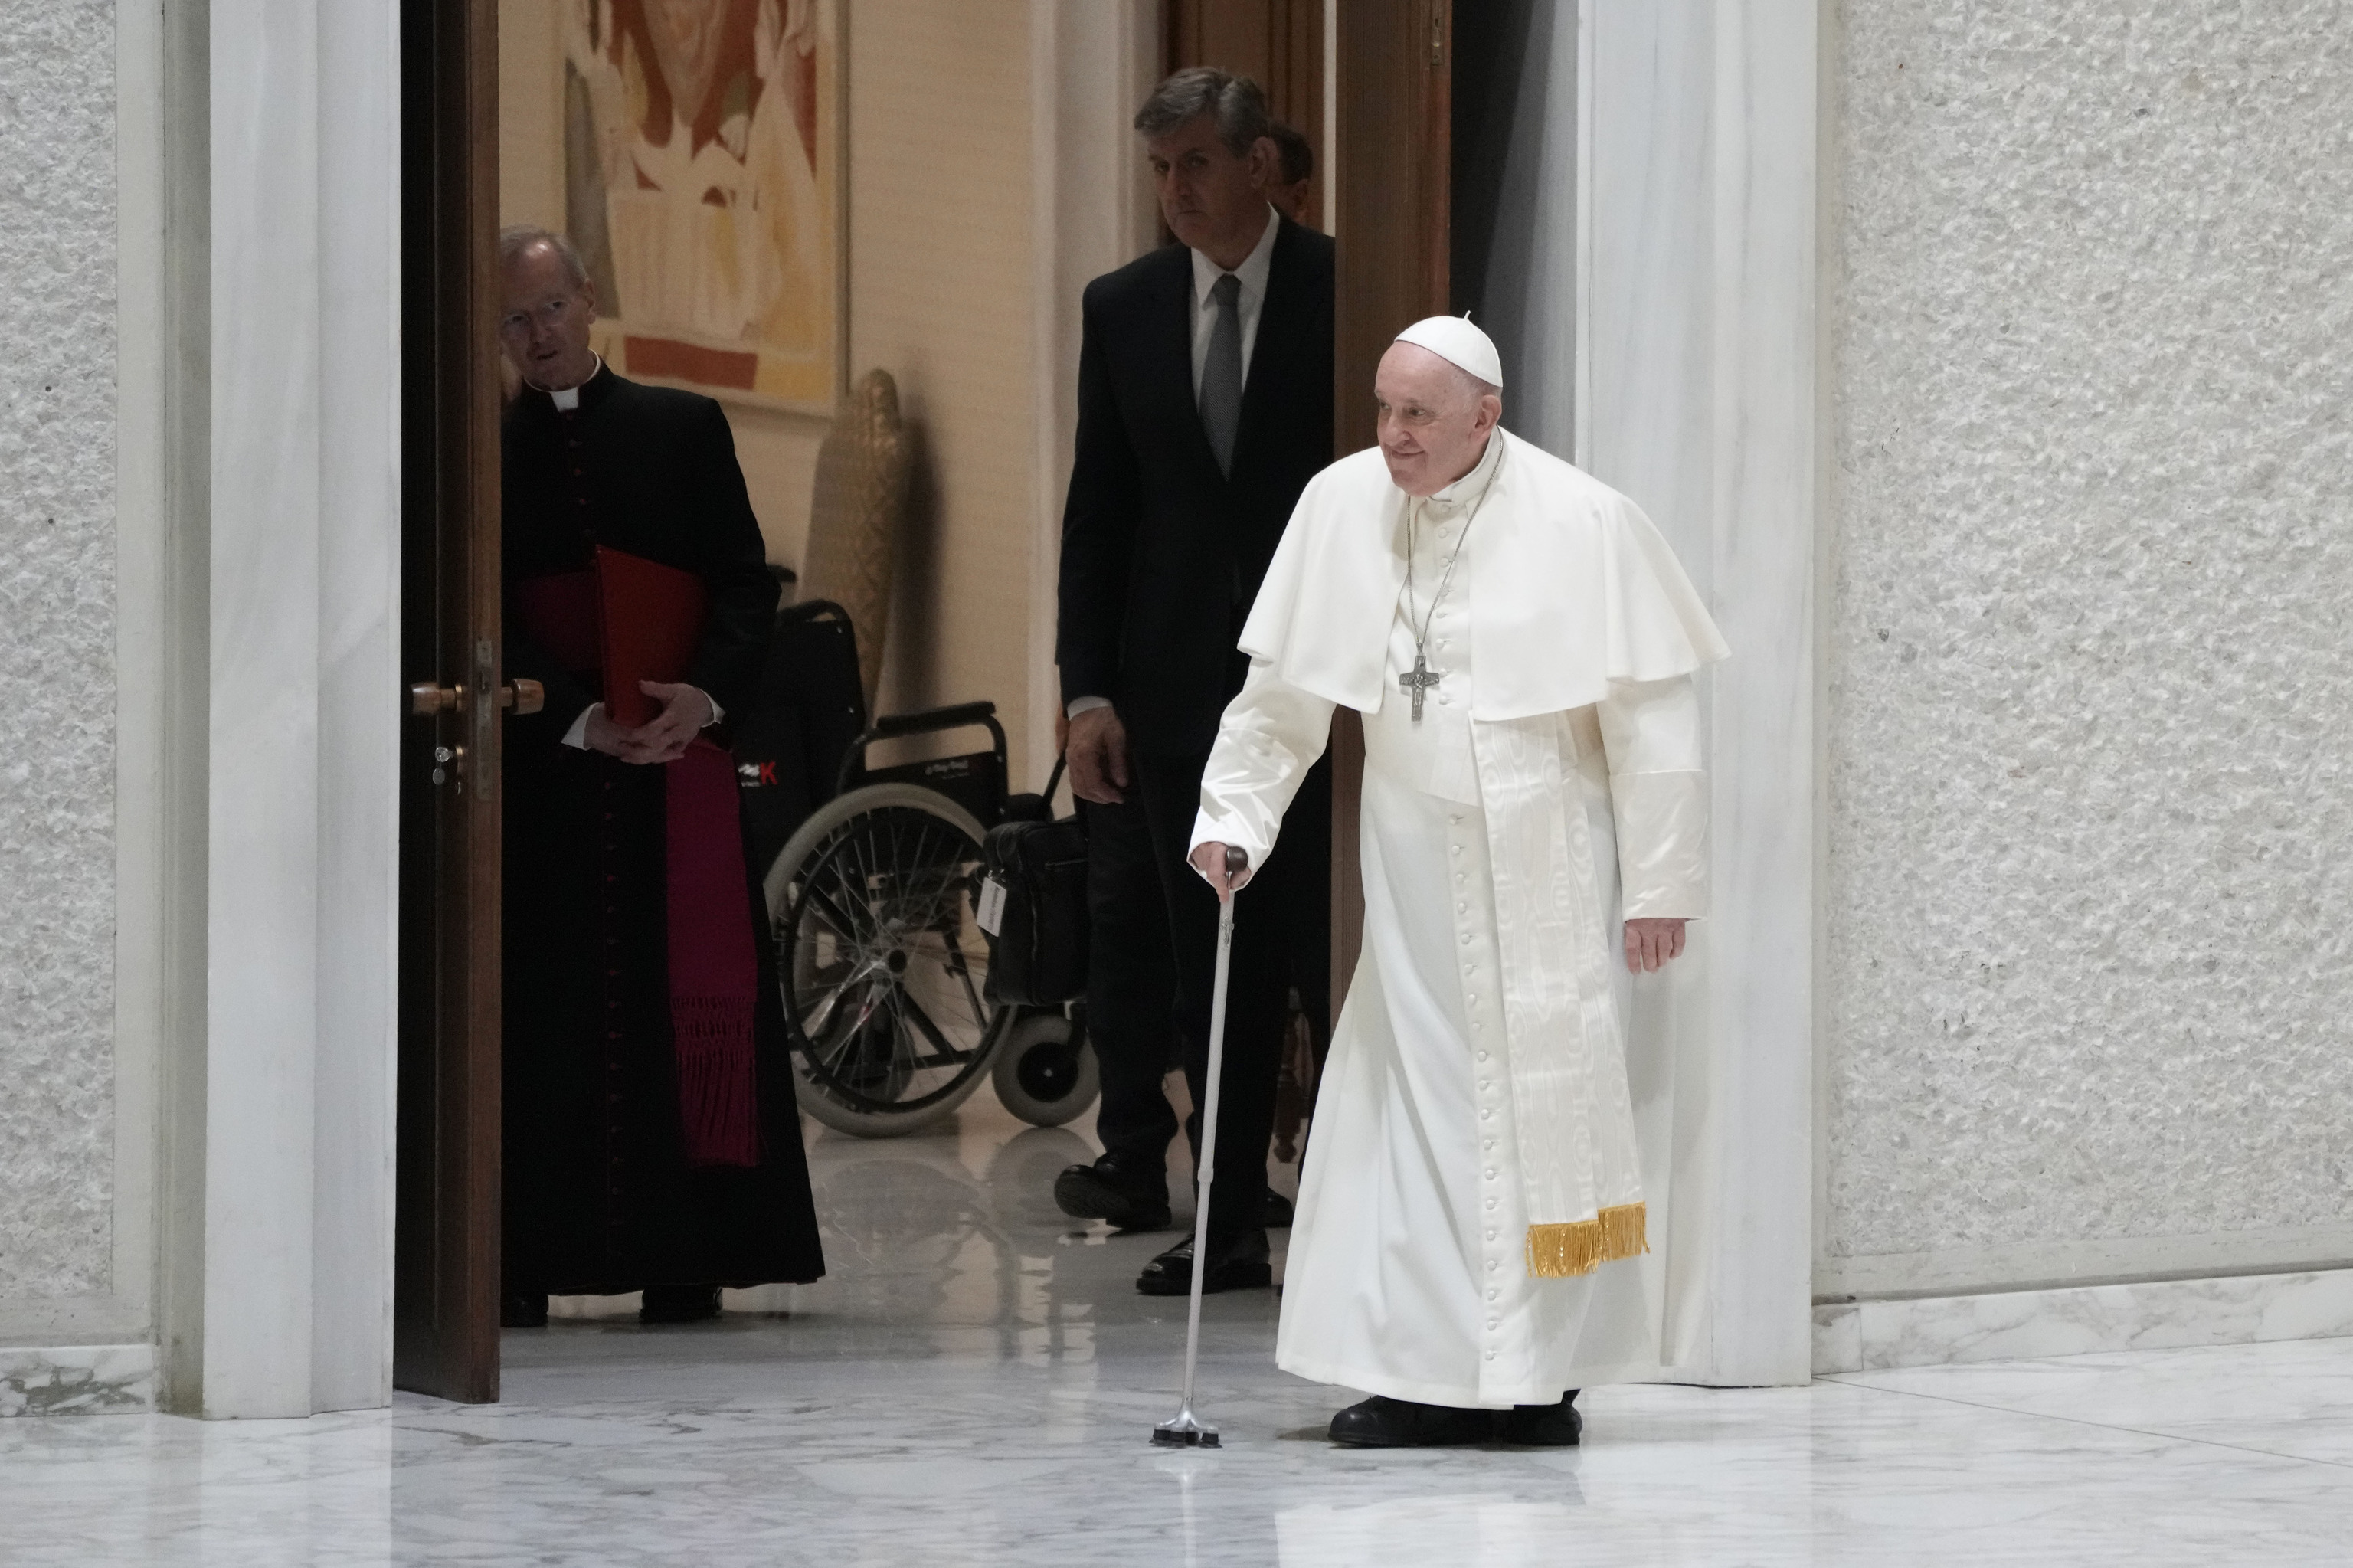 El Papa endurece las normas contra los abusos sexuales en la Iglesia e incluye a los líderes laicos